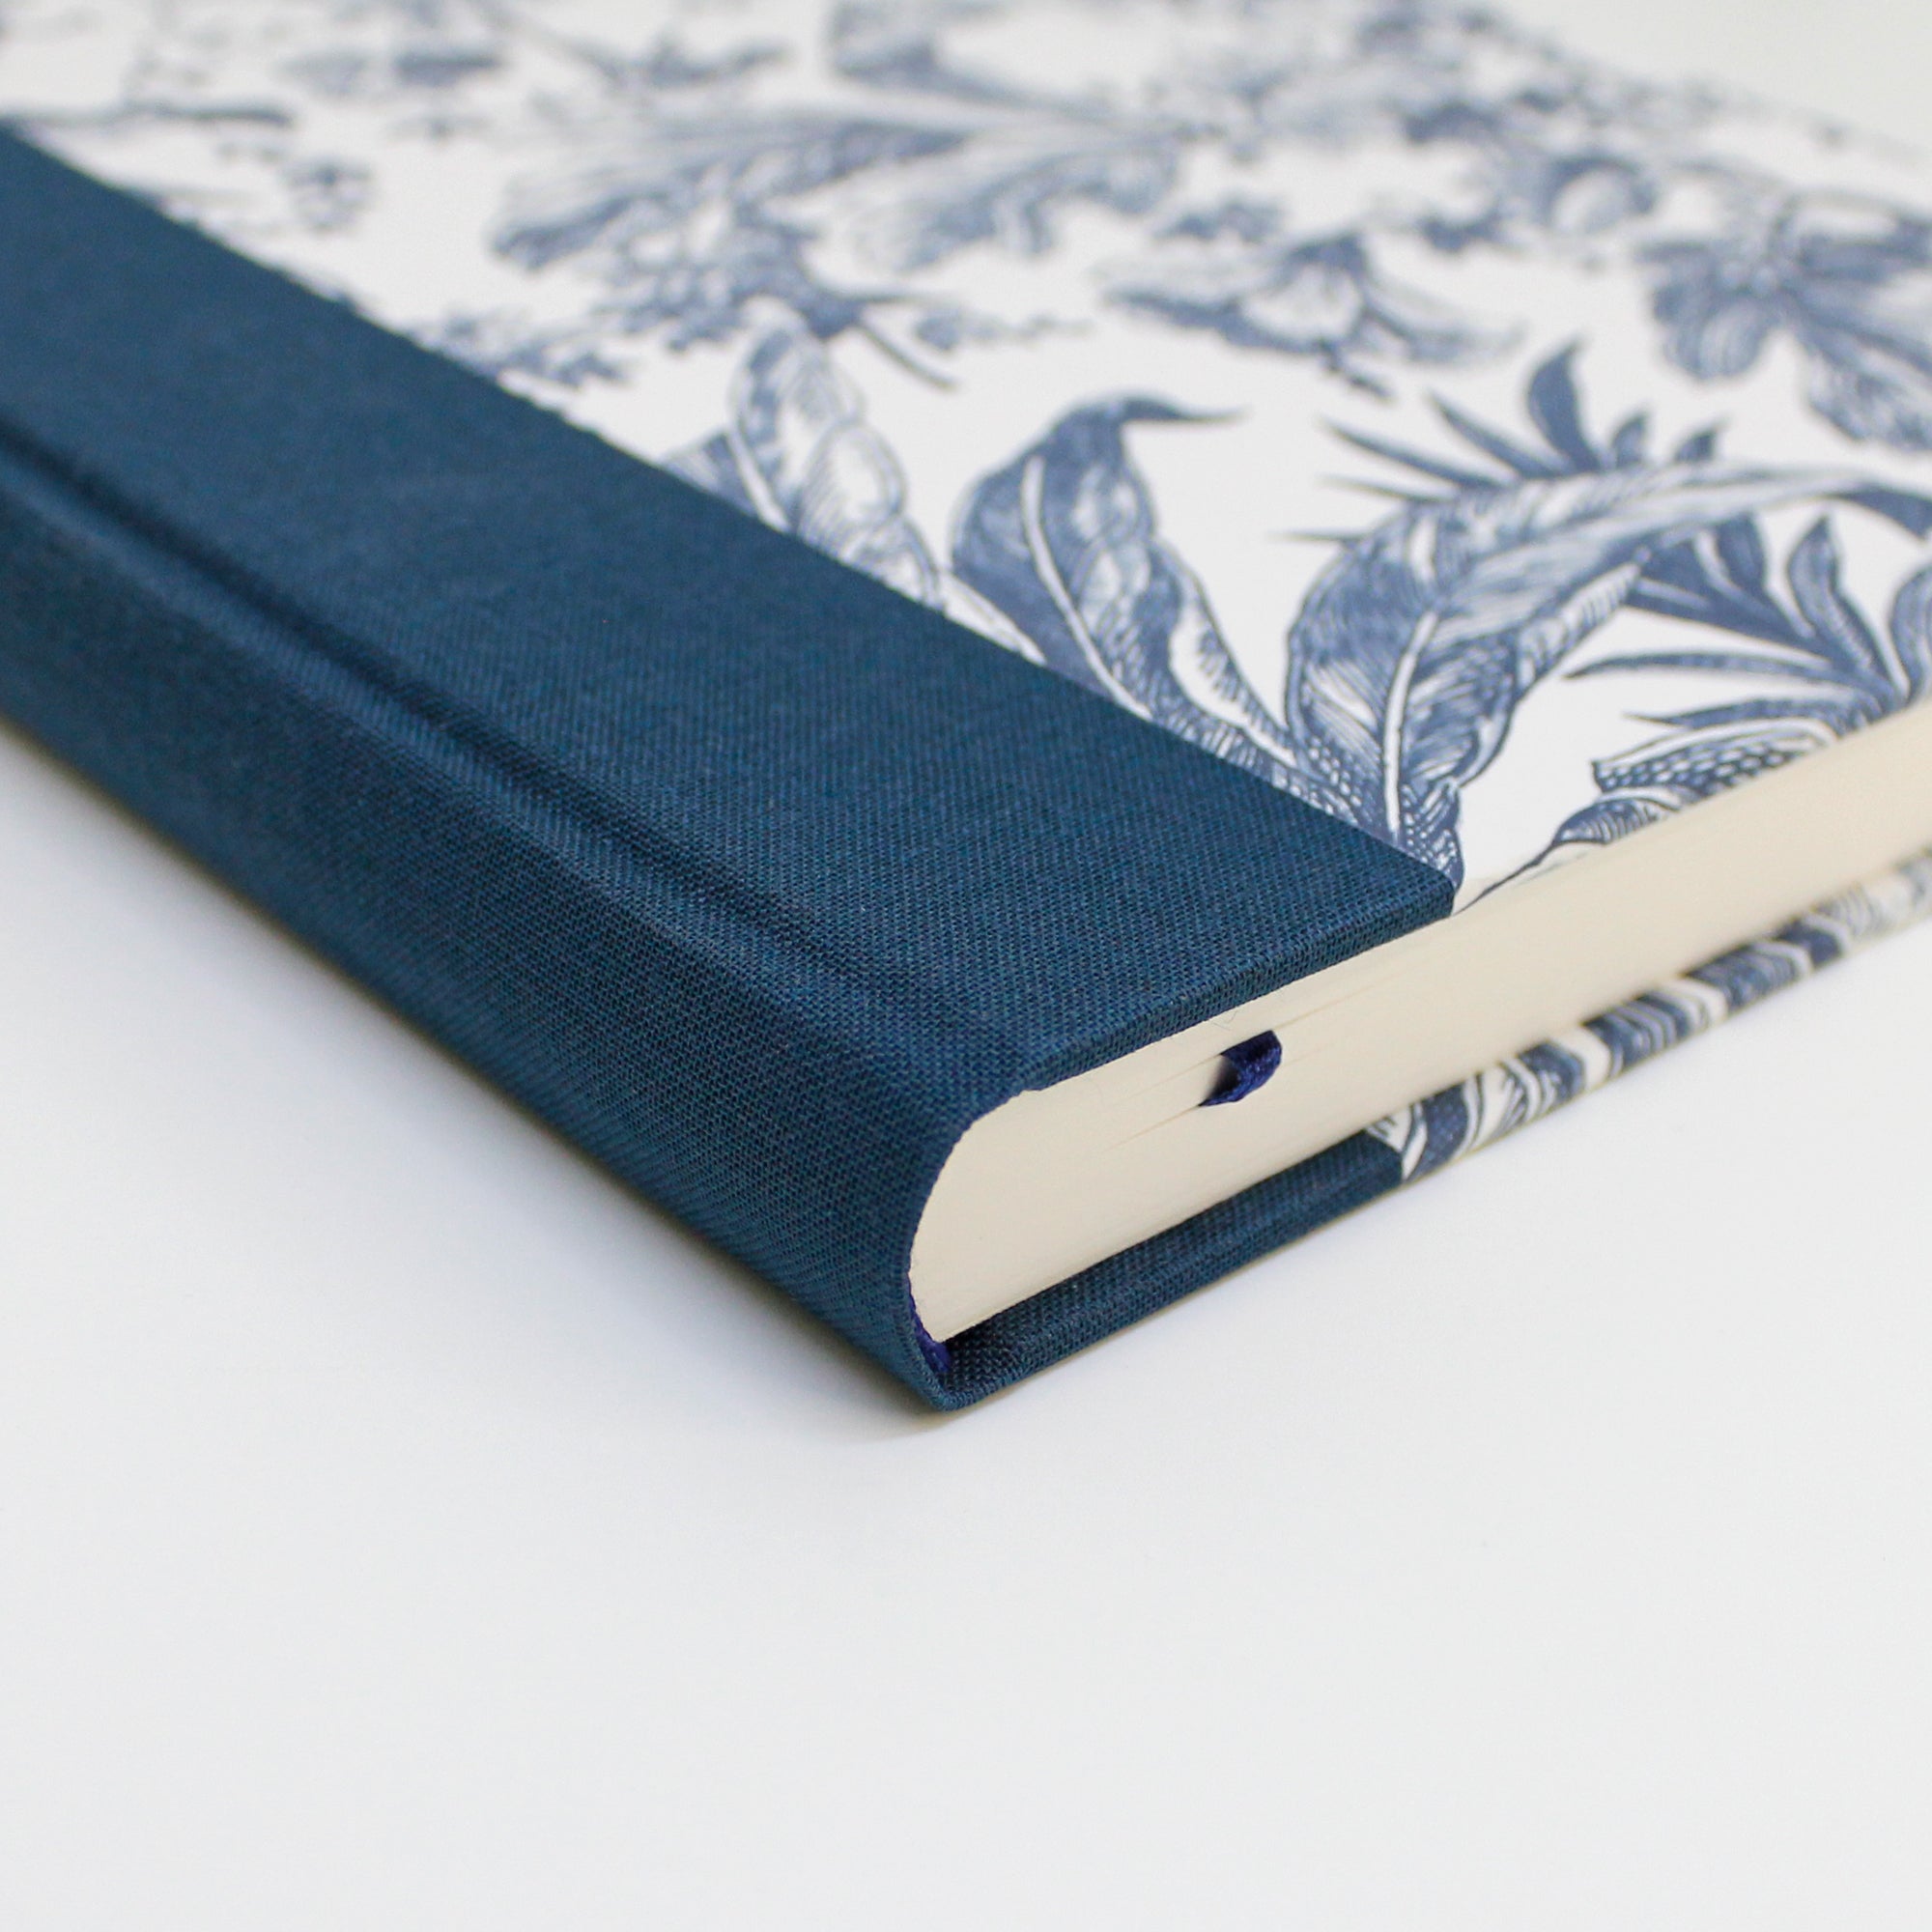 Vintage Notebook - Blue